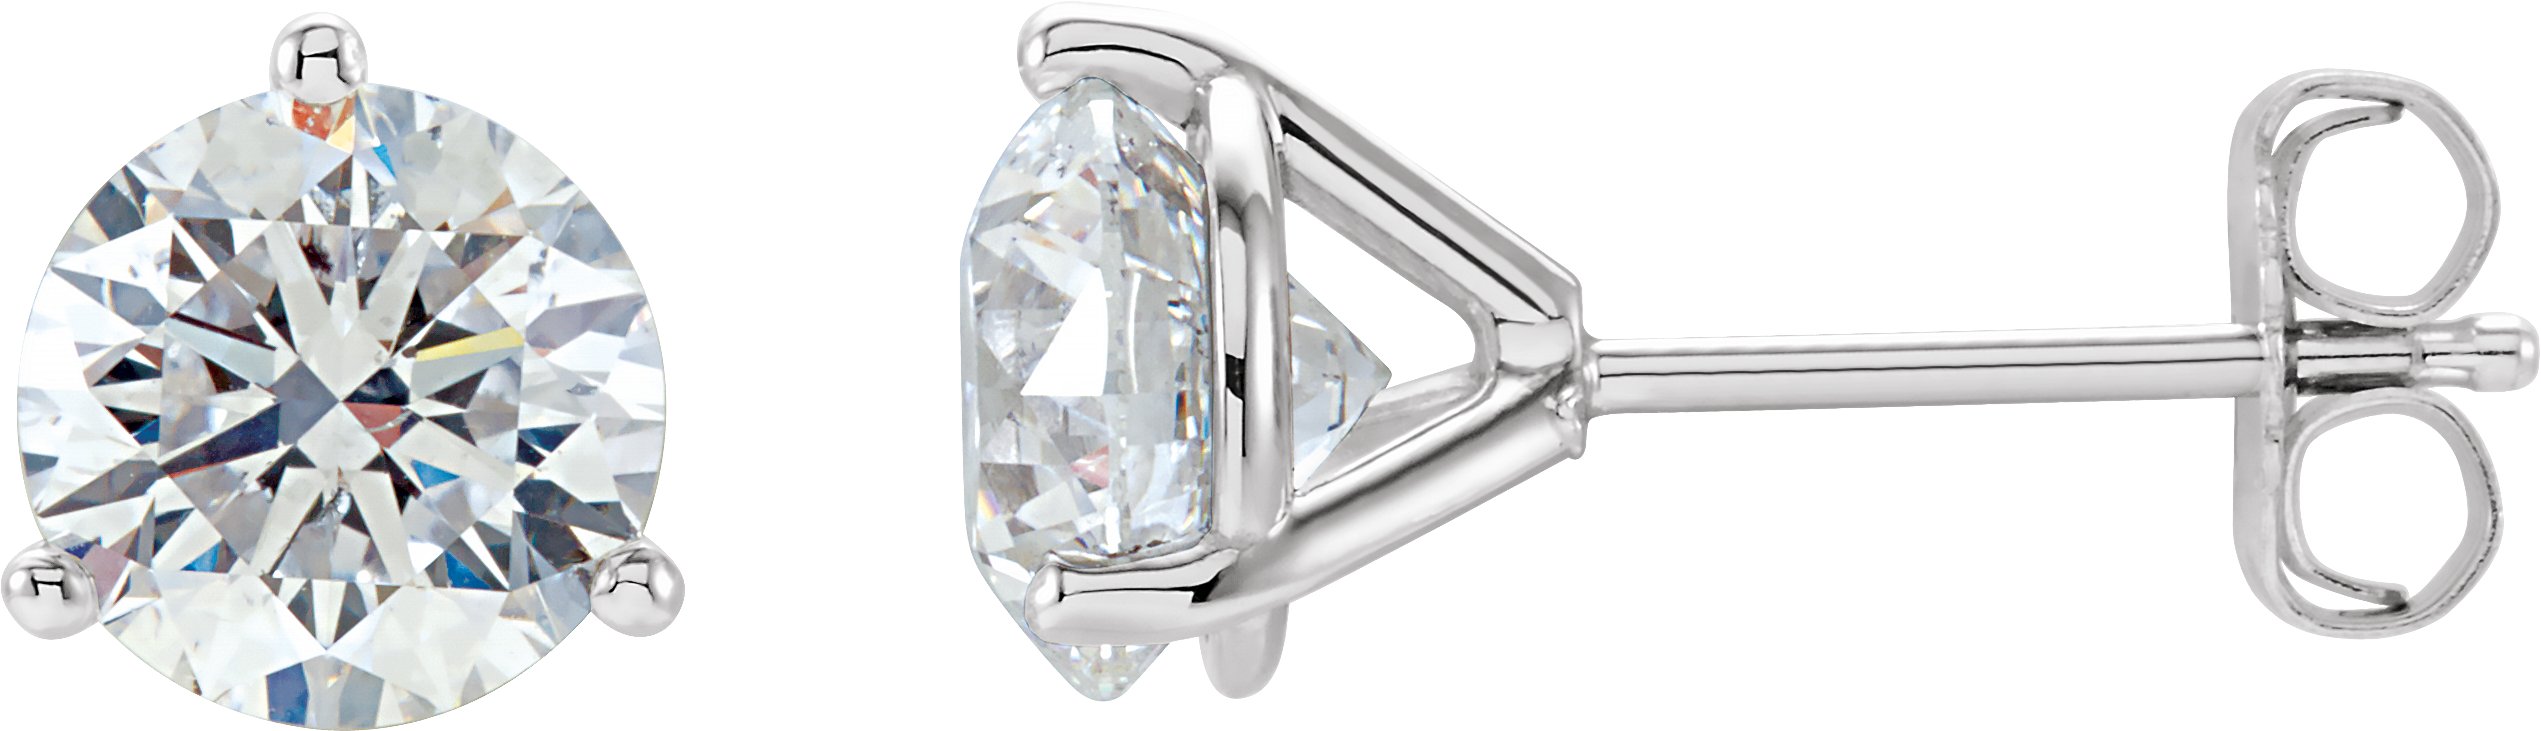 14K White 2 CTW Natural Diamond Stud Earrings